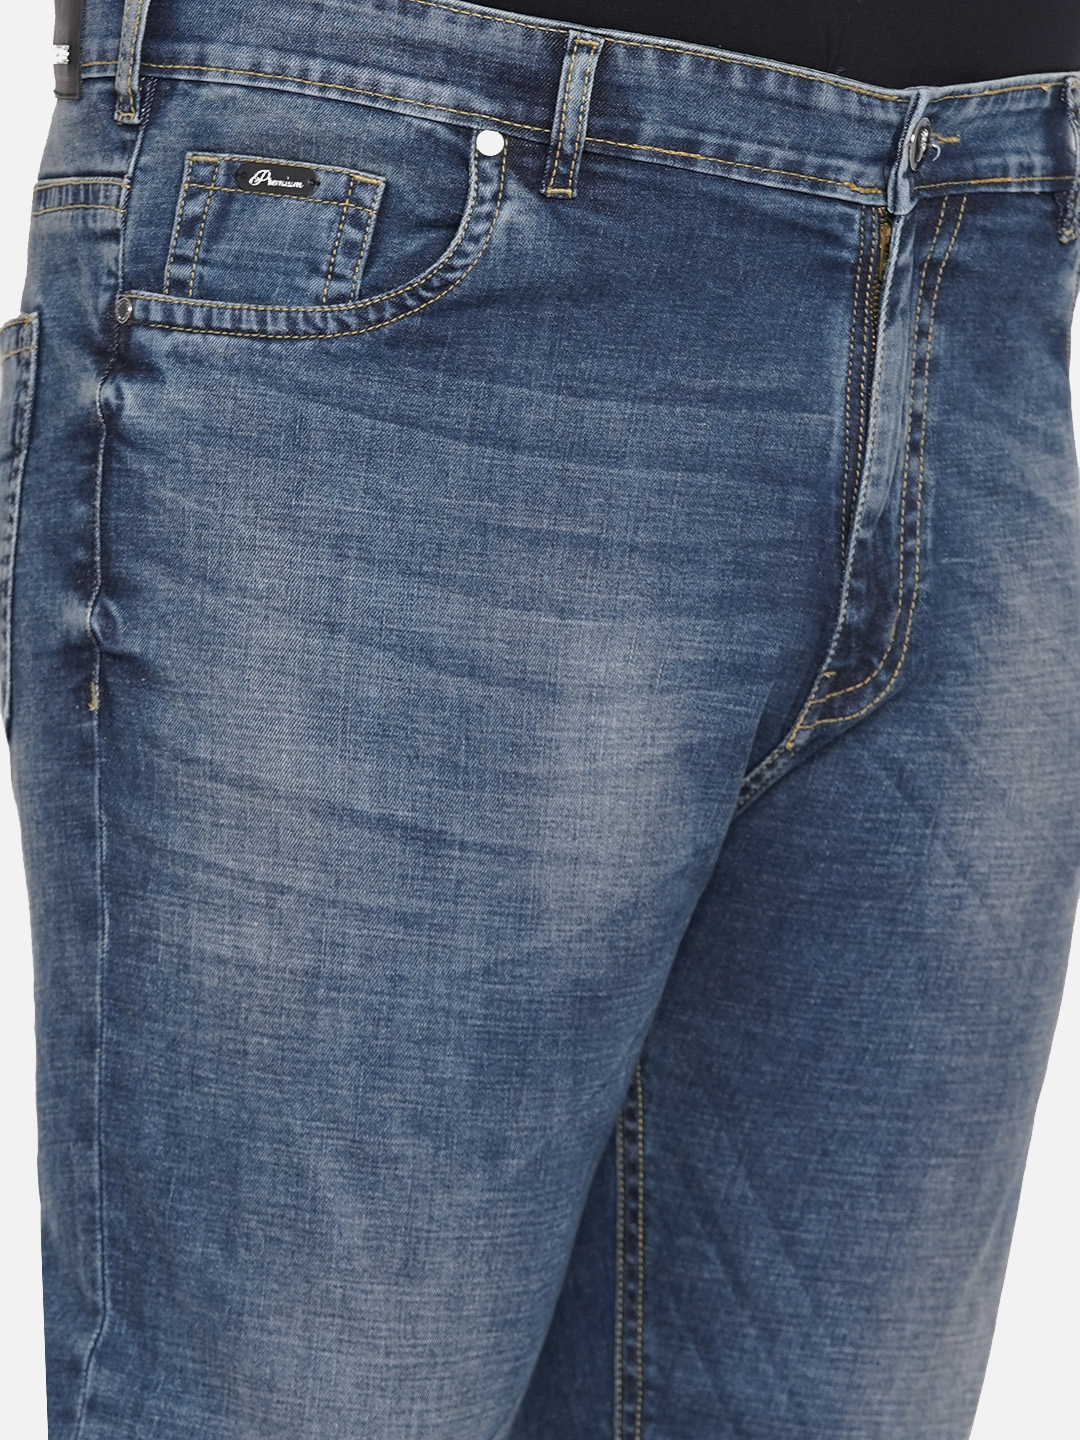 bottomwear/jeans/PJPJ6046/pjpj6046-2.jpg